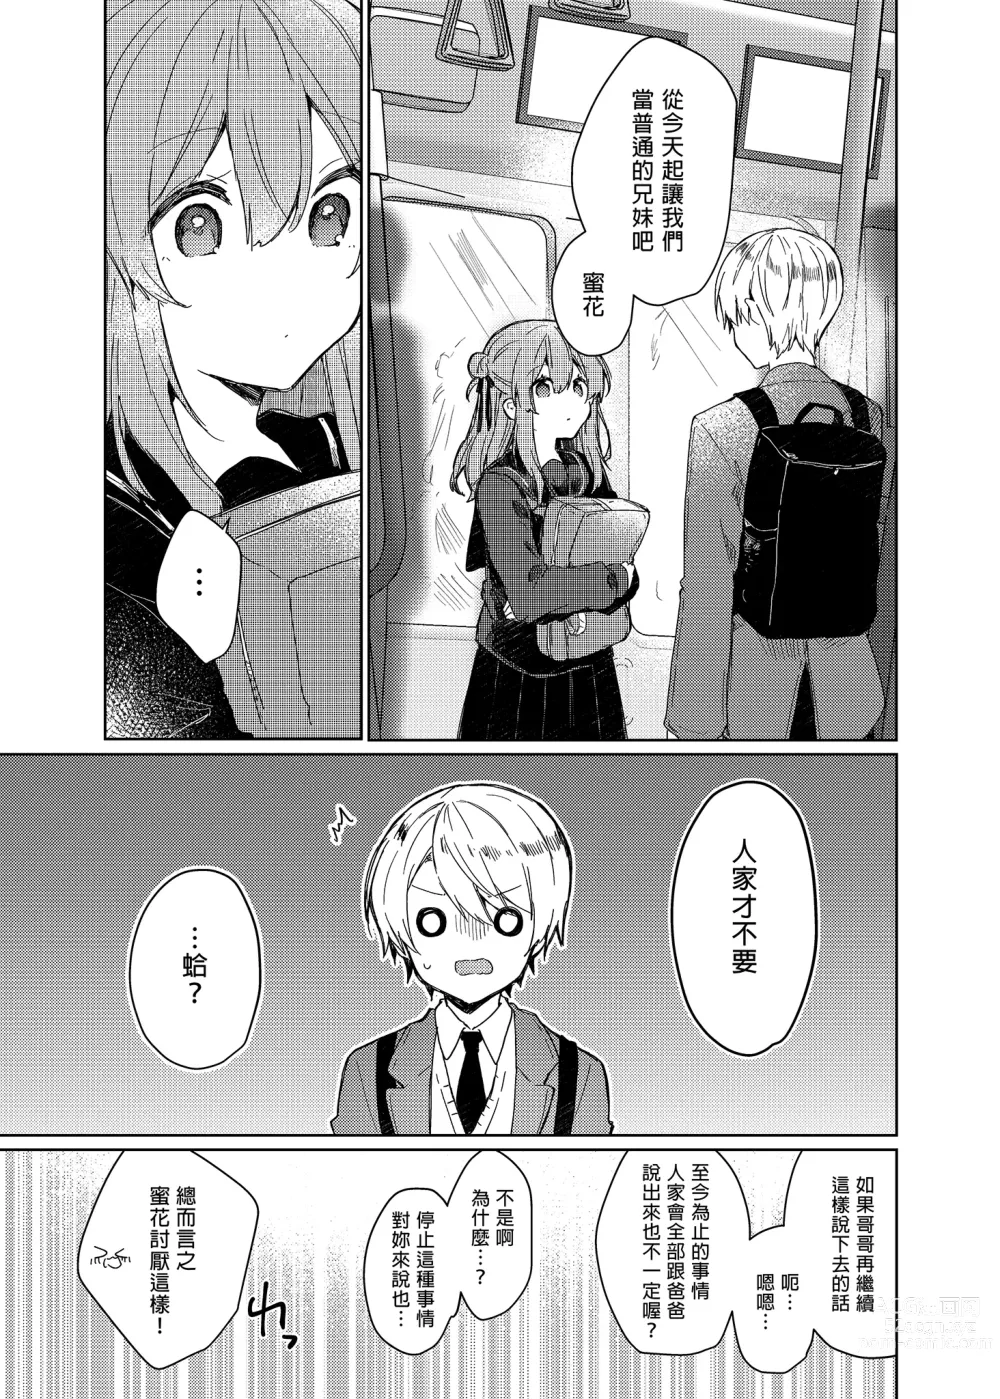 Page 53 of doujinshi 今天開始當個壞孩子。 (decensored)